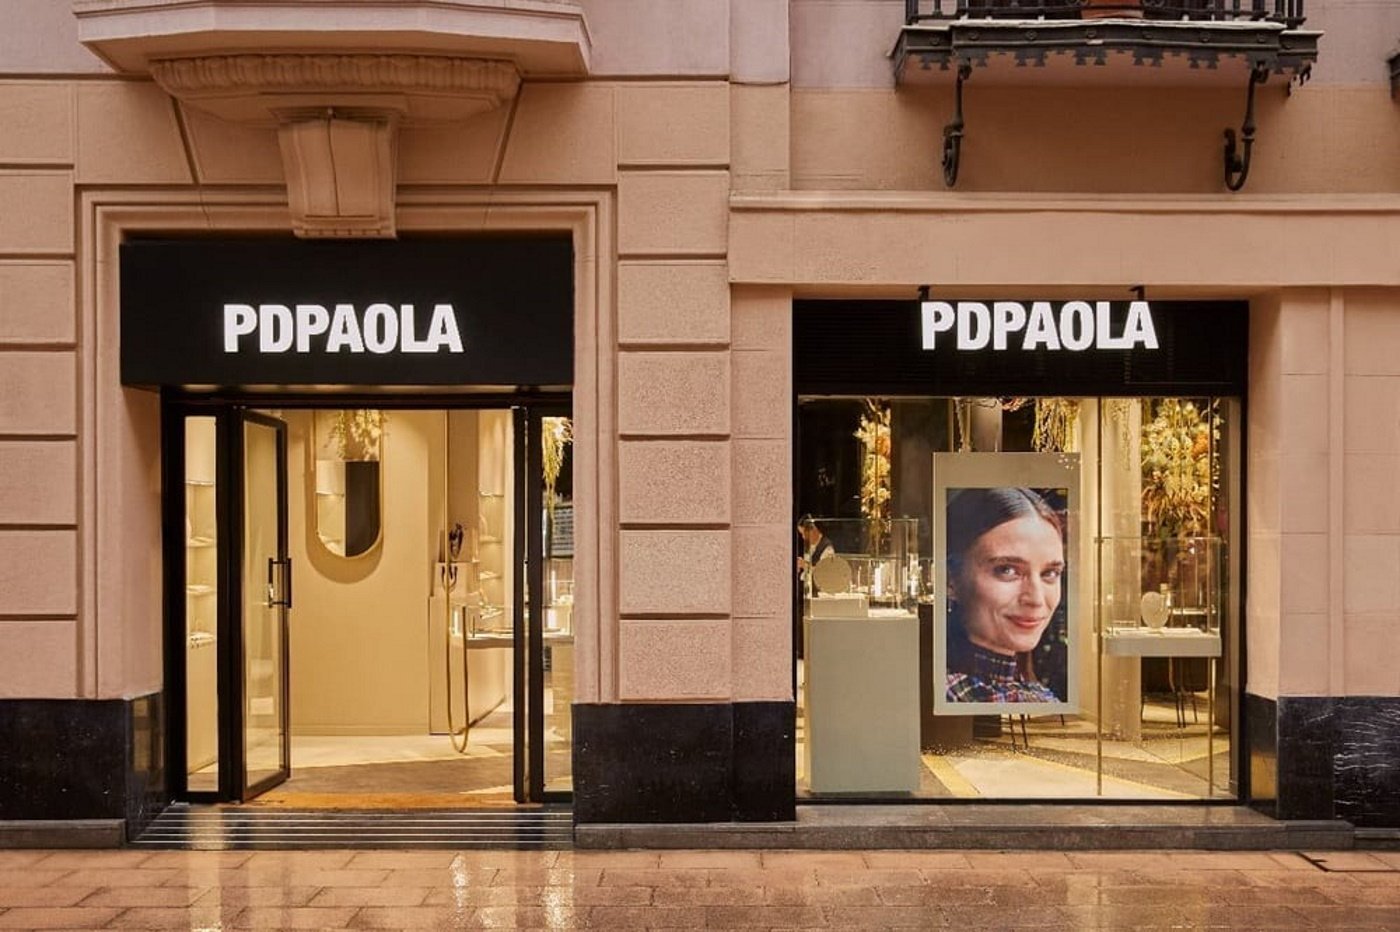 La catalana PDEPAOLA fa el salt internacional i obre una botiga a Londres